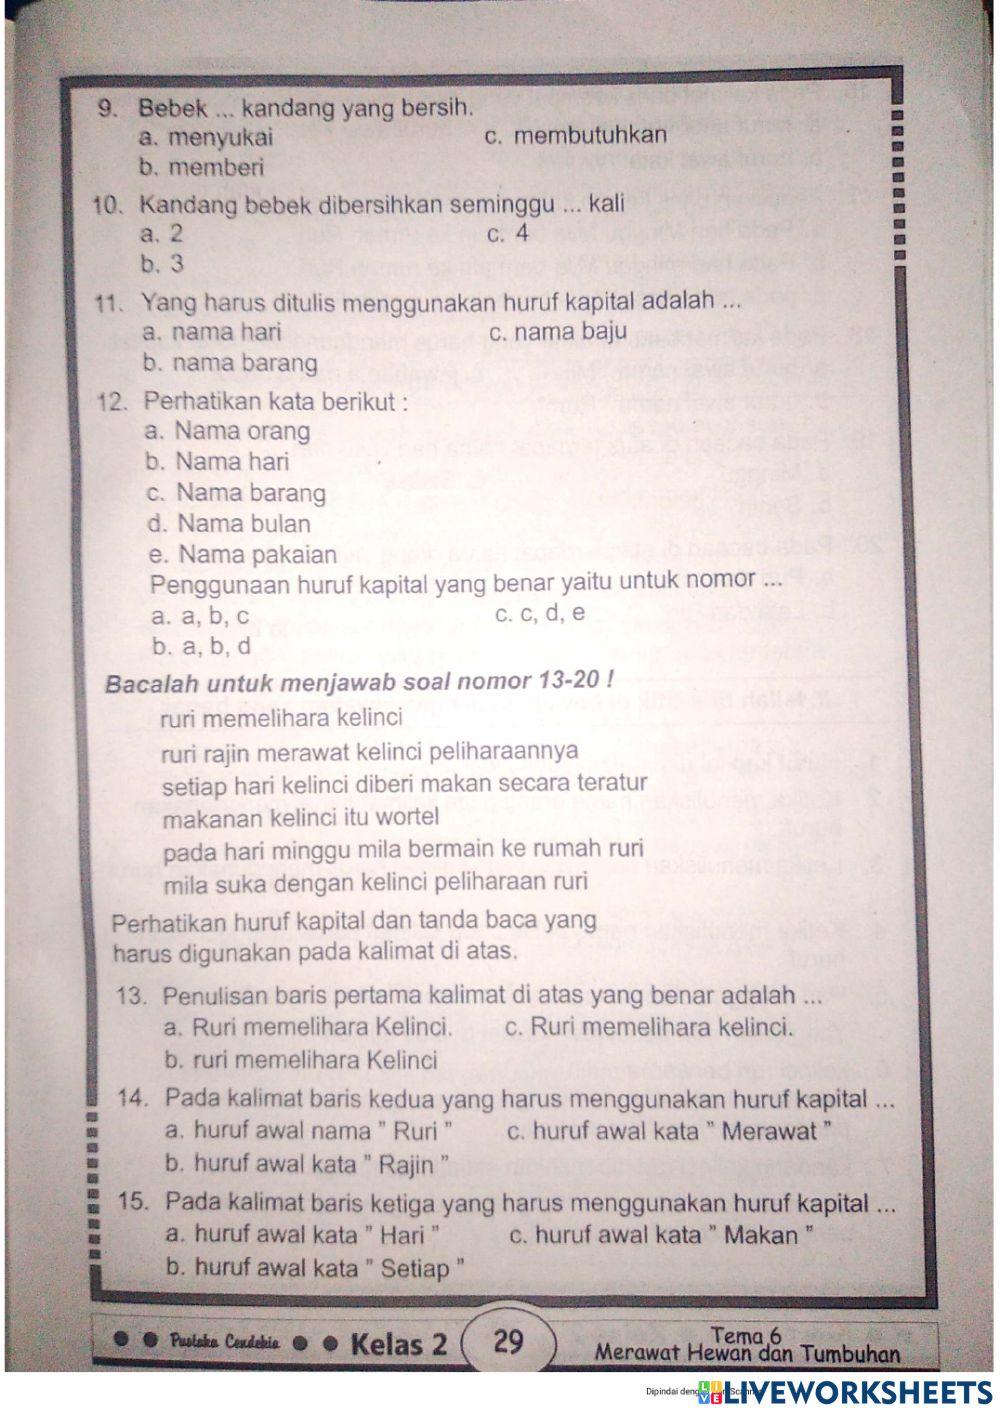 Tema 6  bahasa indo sub tema 2